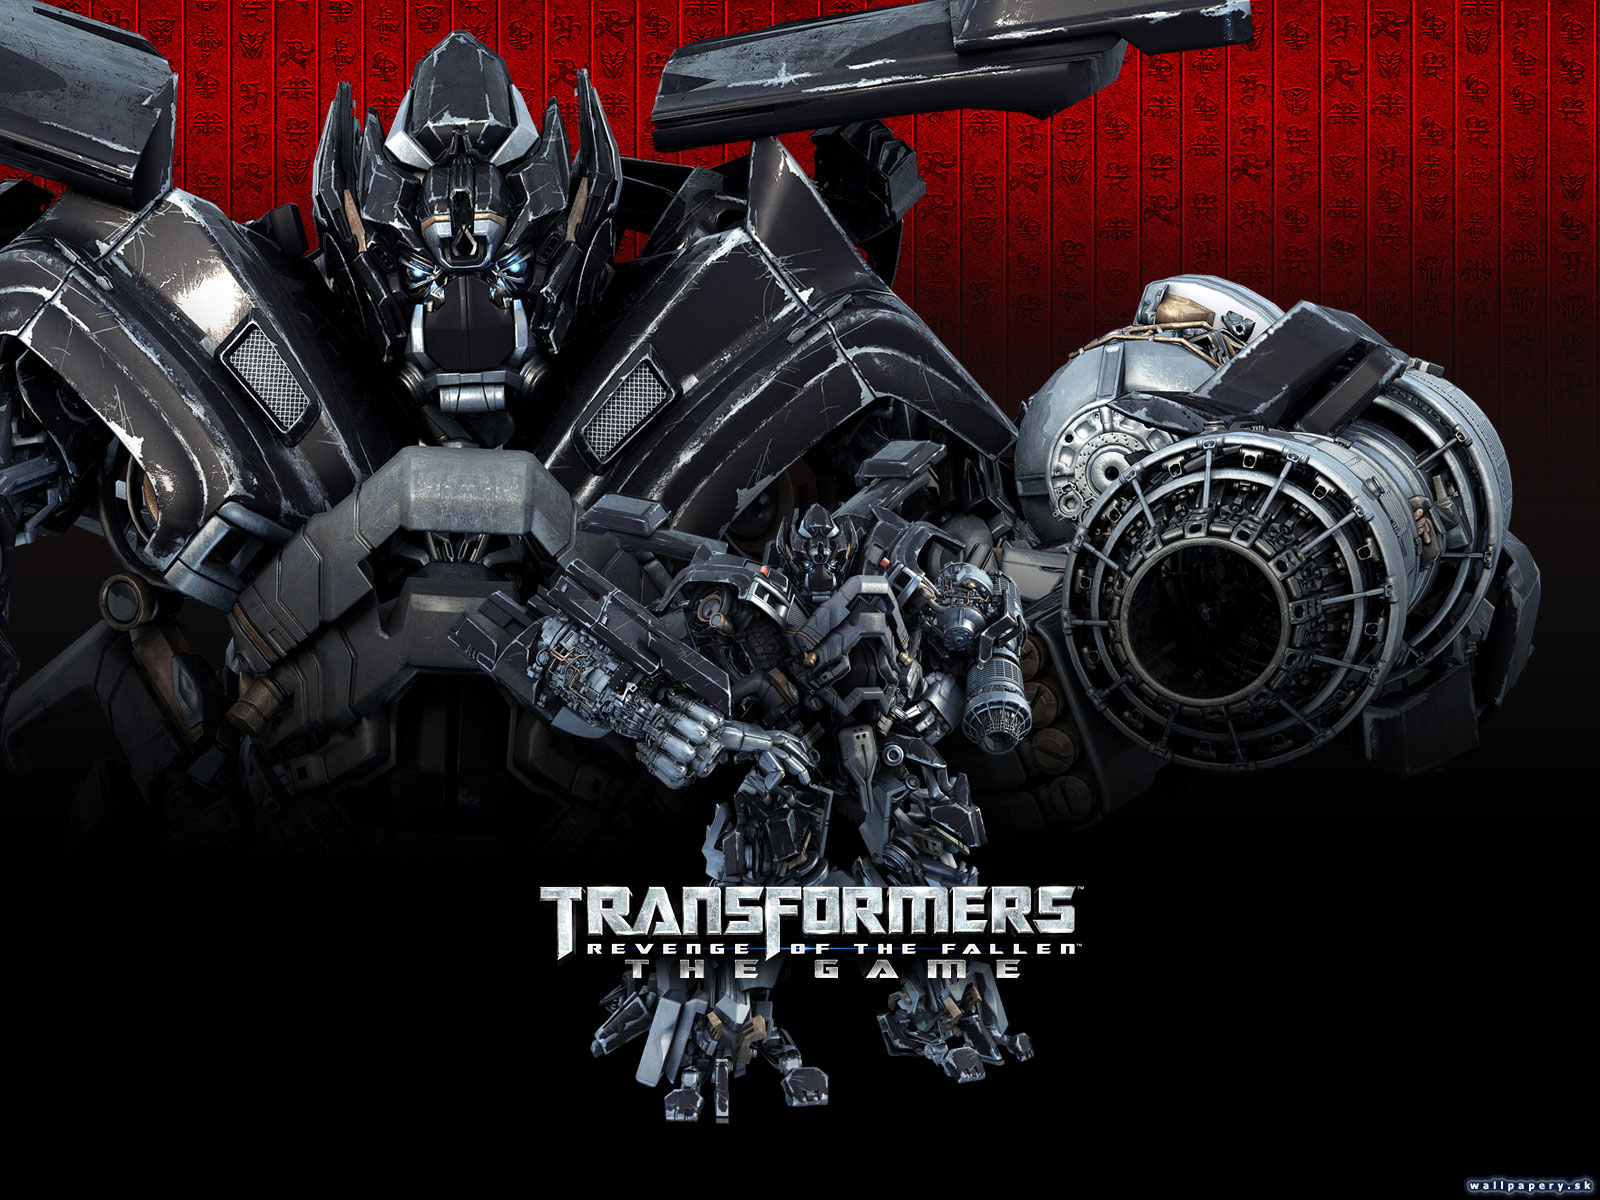 Transformers: Revenge of the Fallen - wallpaper 3